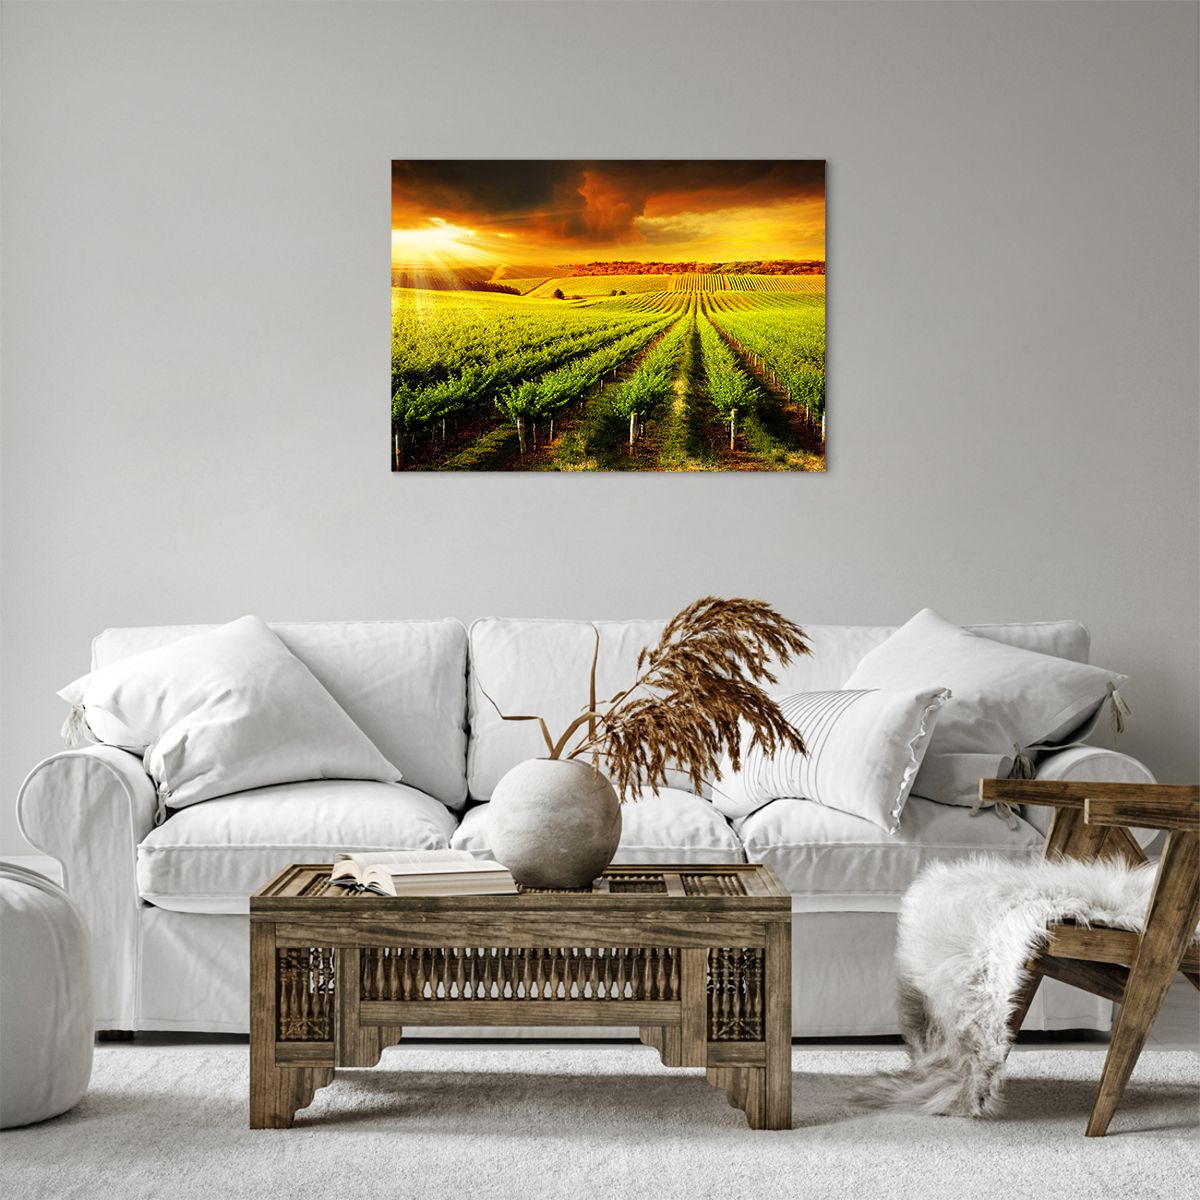 Bild auf Leinwand Landschaft, Bild auf Leinwand Weinberg, Bild auf Leinwand Australien, Bild auf Leinwand Barossa, Bild auf Leinwand Der Sonnenuntergang